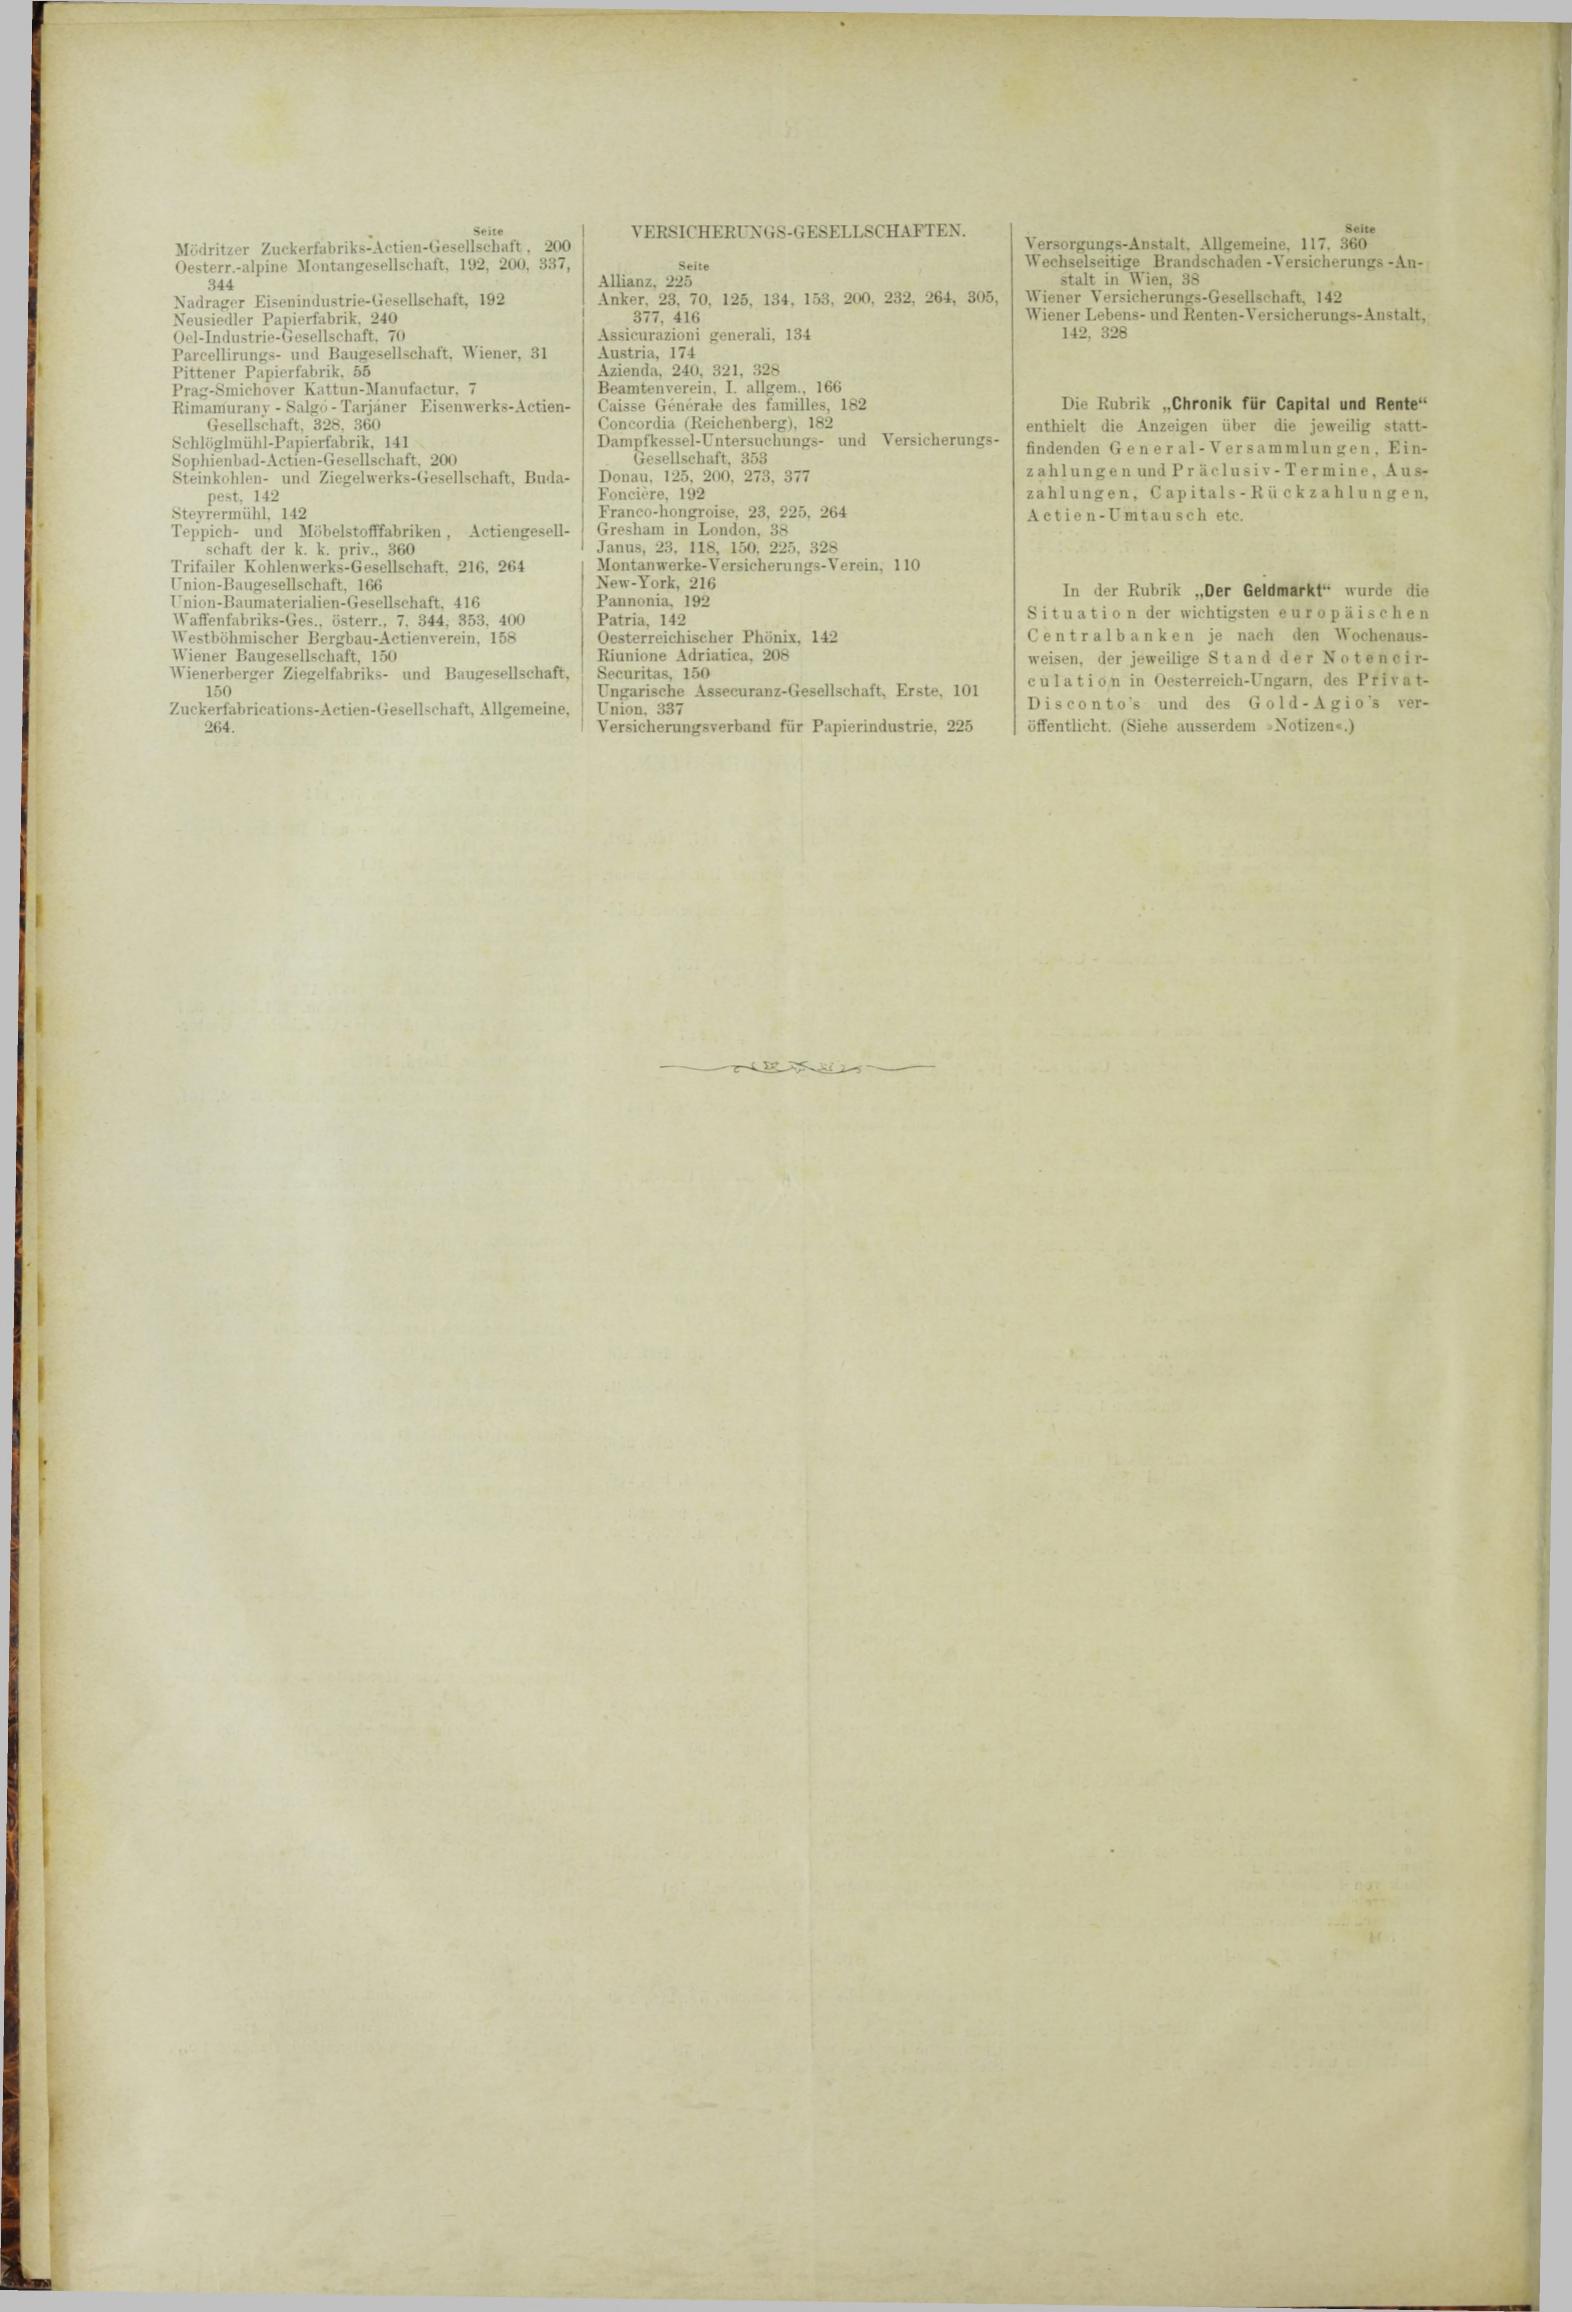 Der Tresor 06.09.1883 - Seite 12